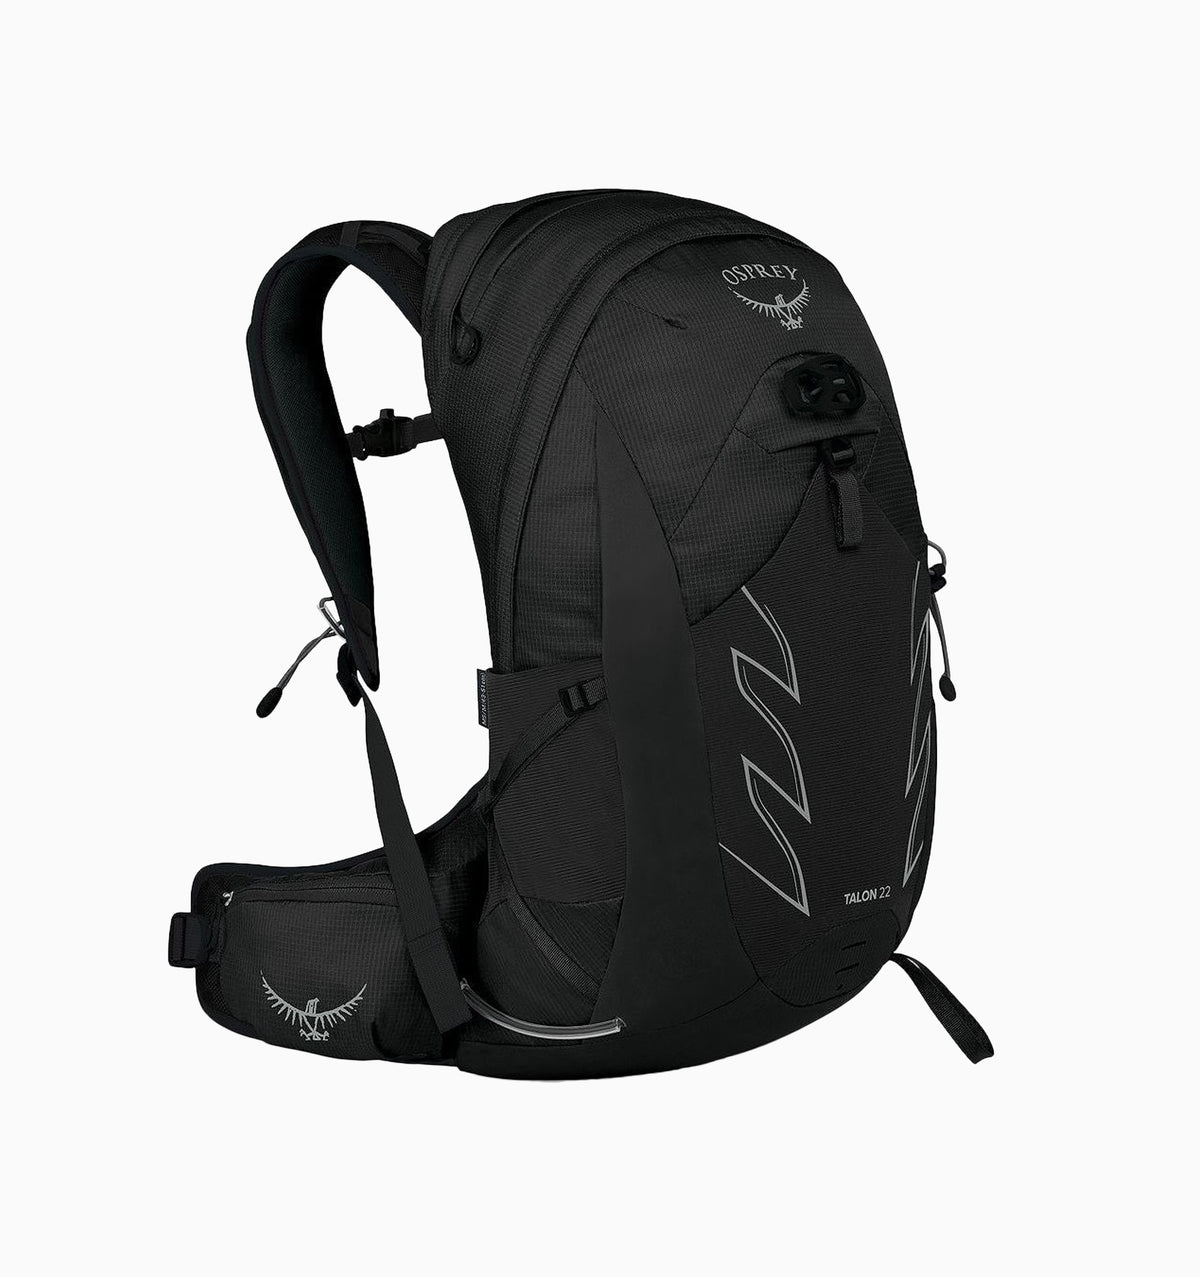 Osprey Talon Men's Day Hiking Backpack 22L - Stealth Black